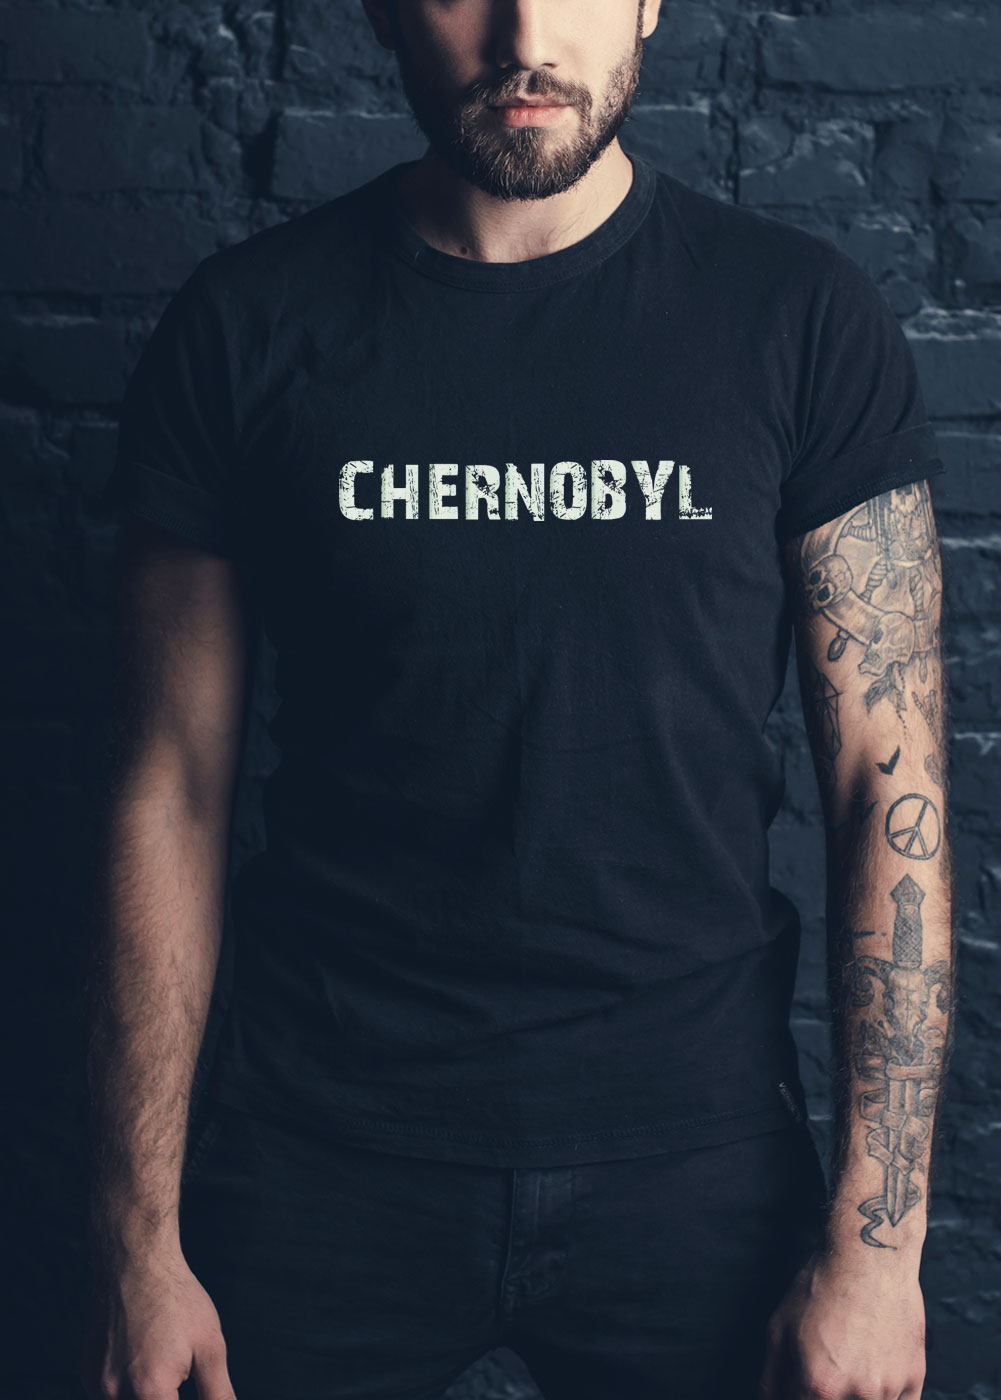 chernobyl ghost